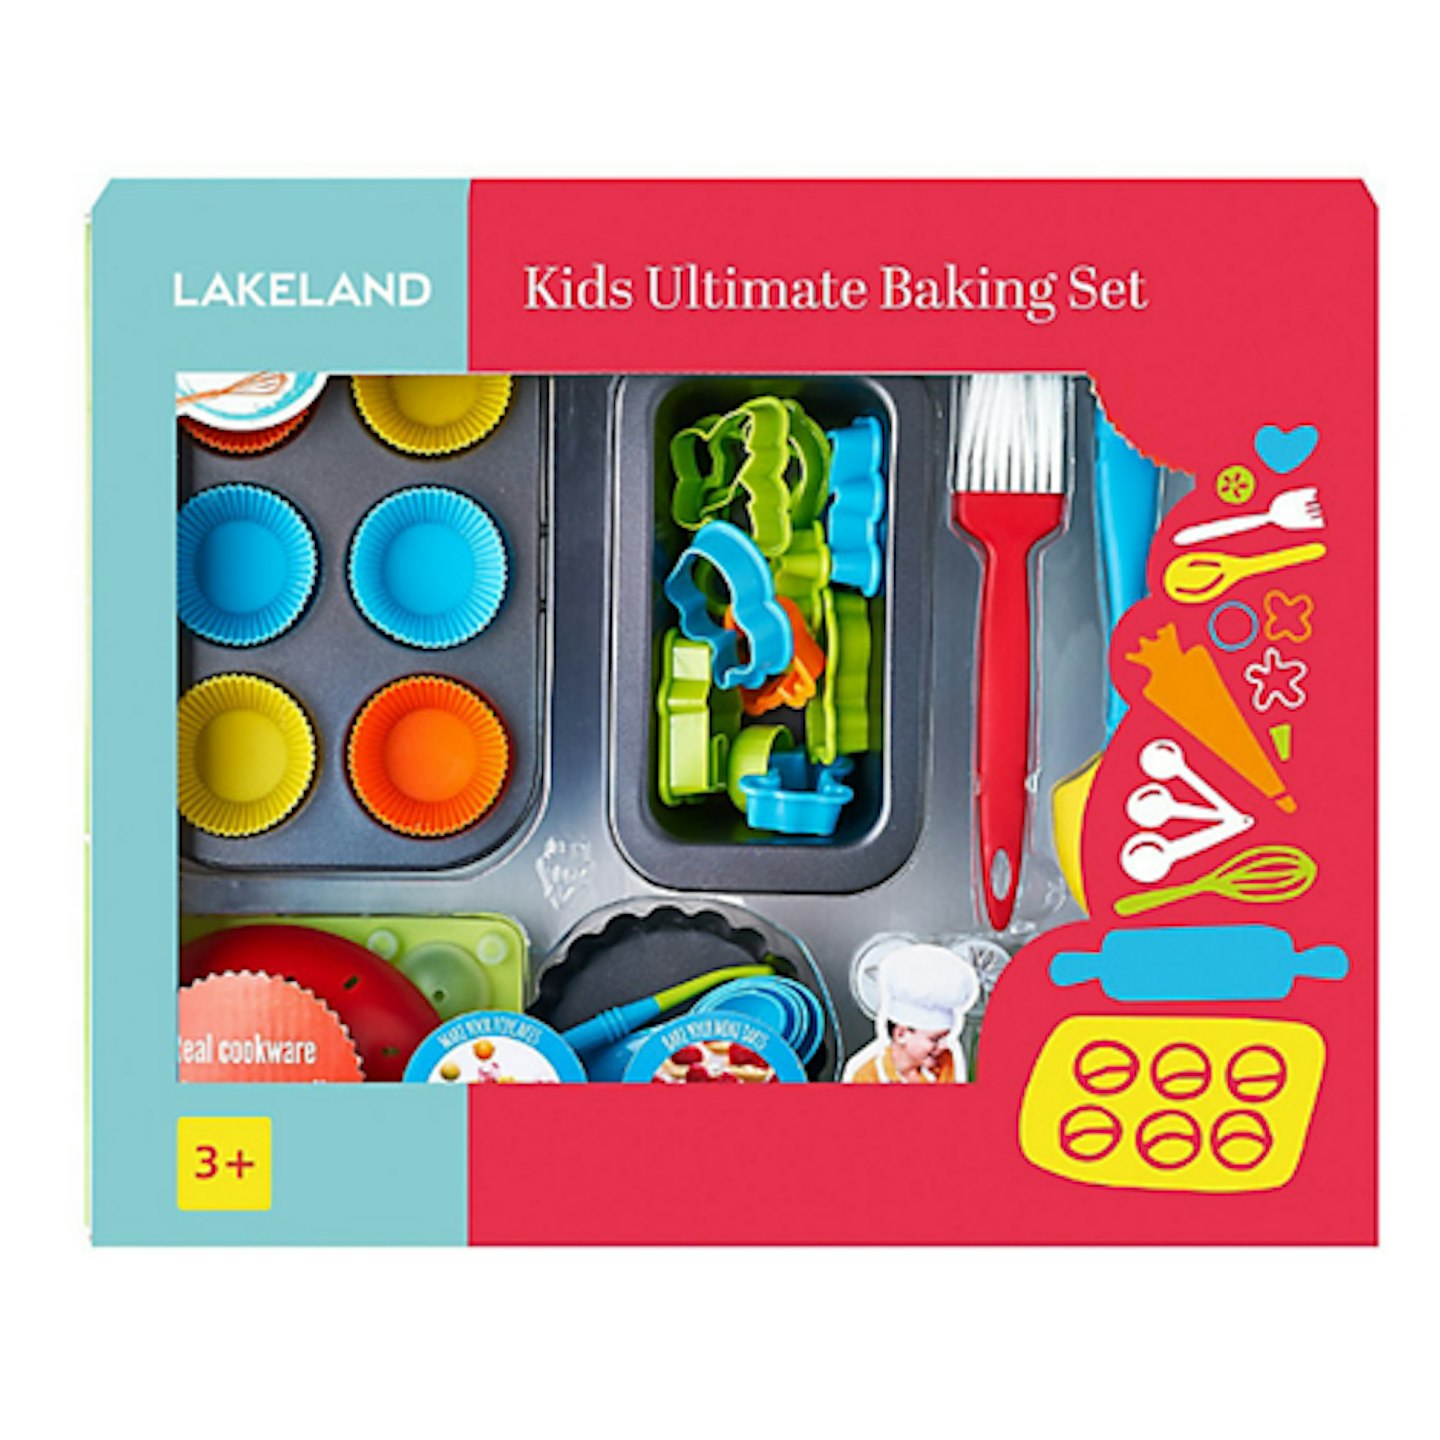 Lakeland Kidsu0026#039; Real Cookware 48pc Ultimate Baking Gift Set